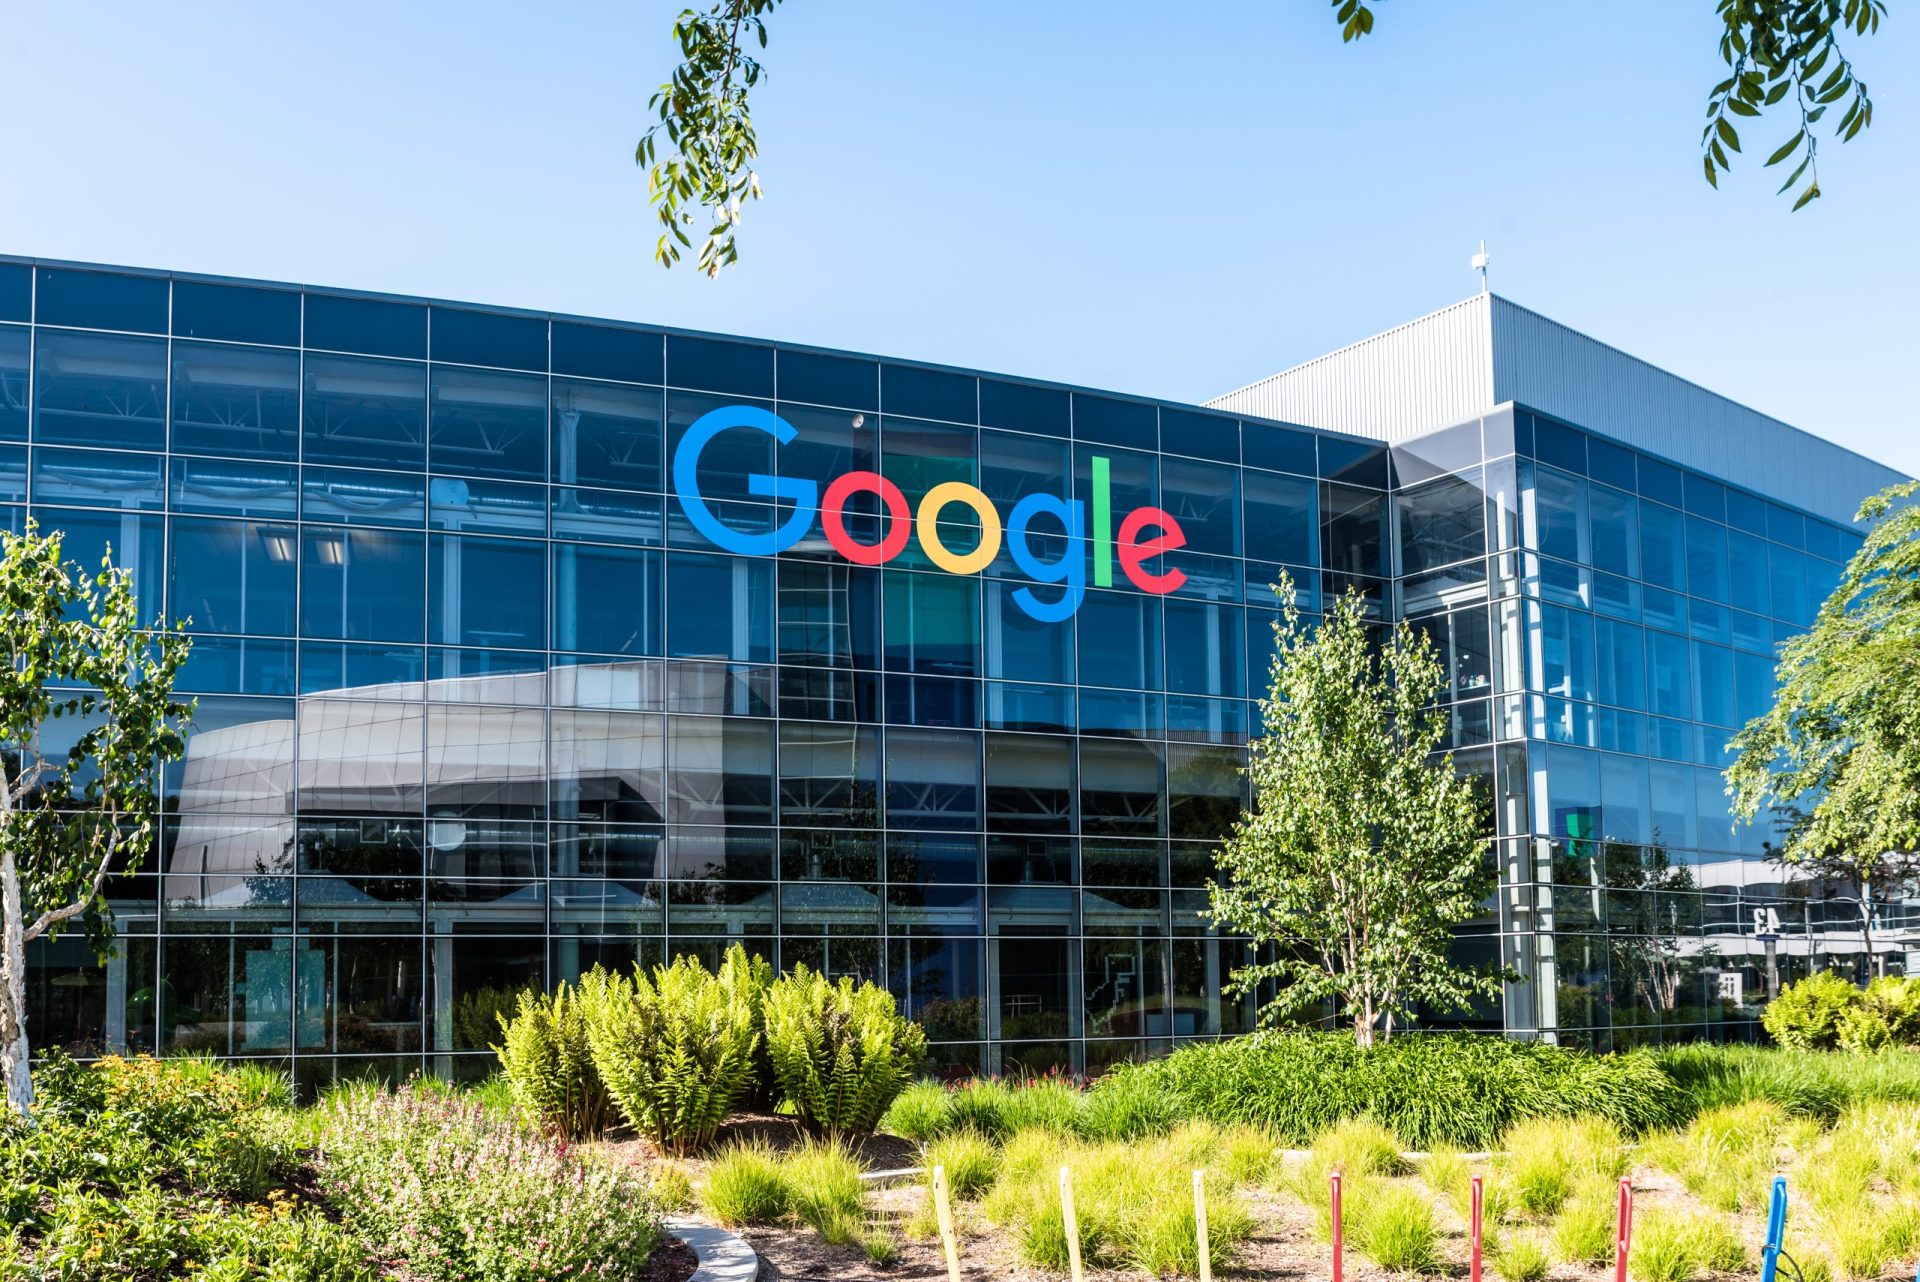 Google despediu quase 50 funcionários nos últimos dois anos por assédio sexual